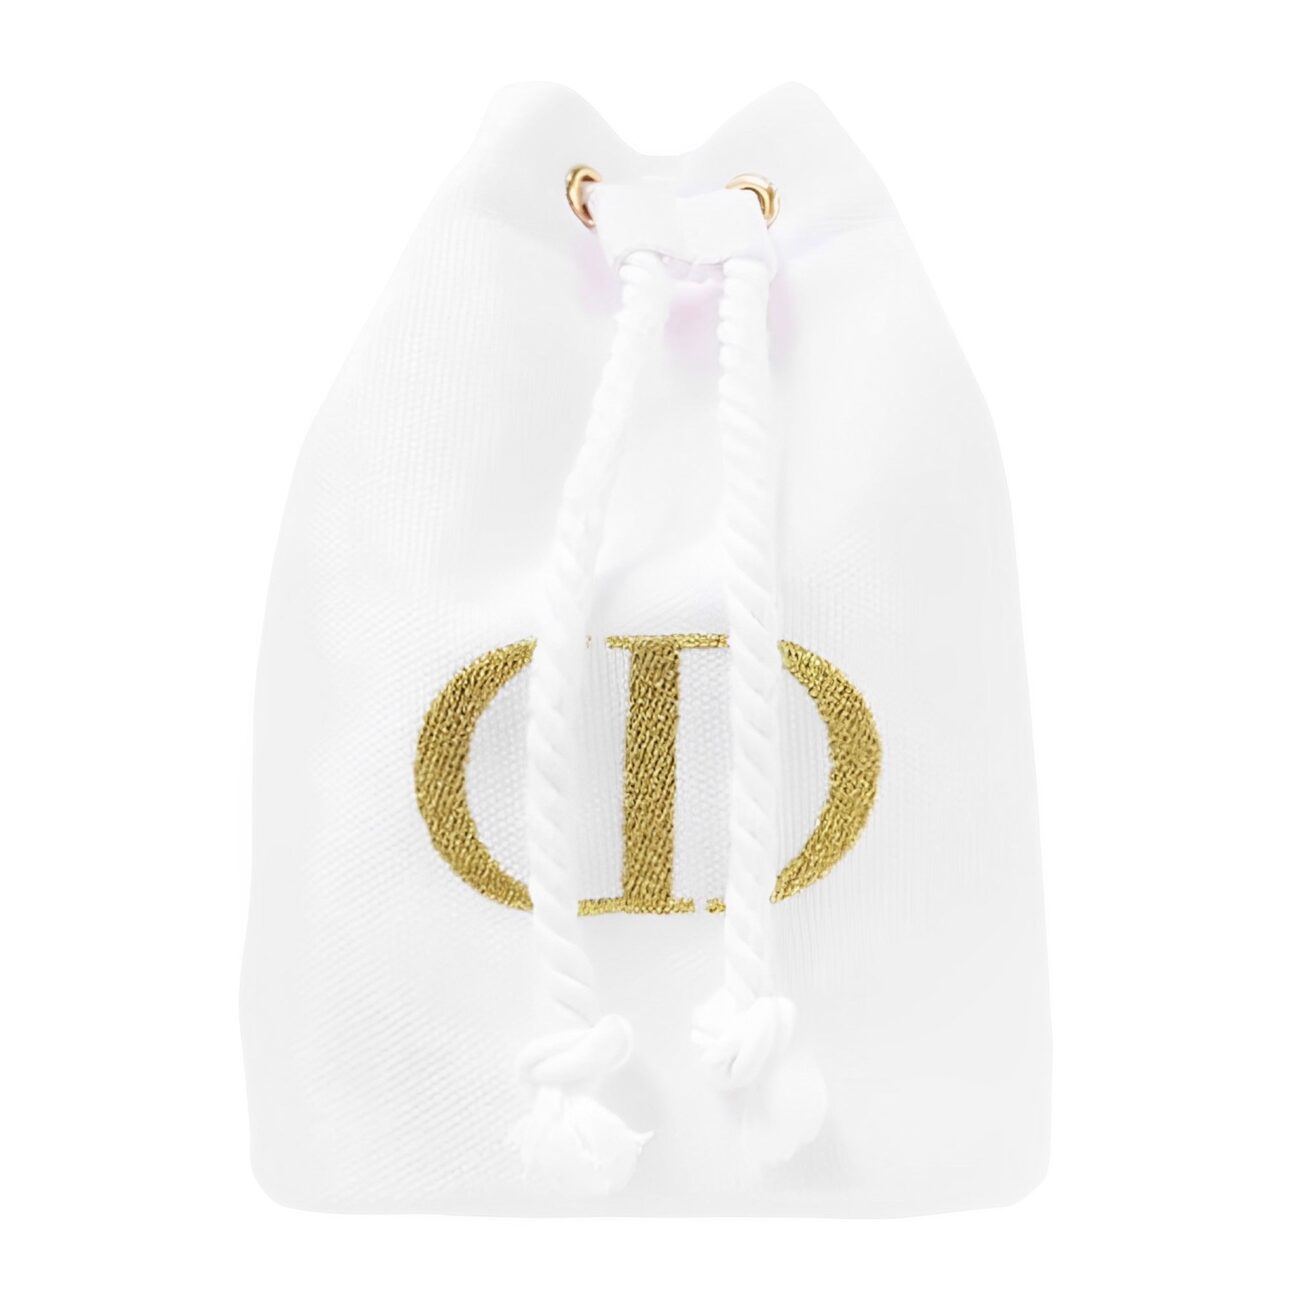 White drawstring bag with golden logo detail.